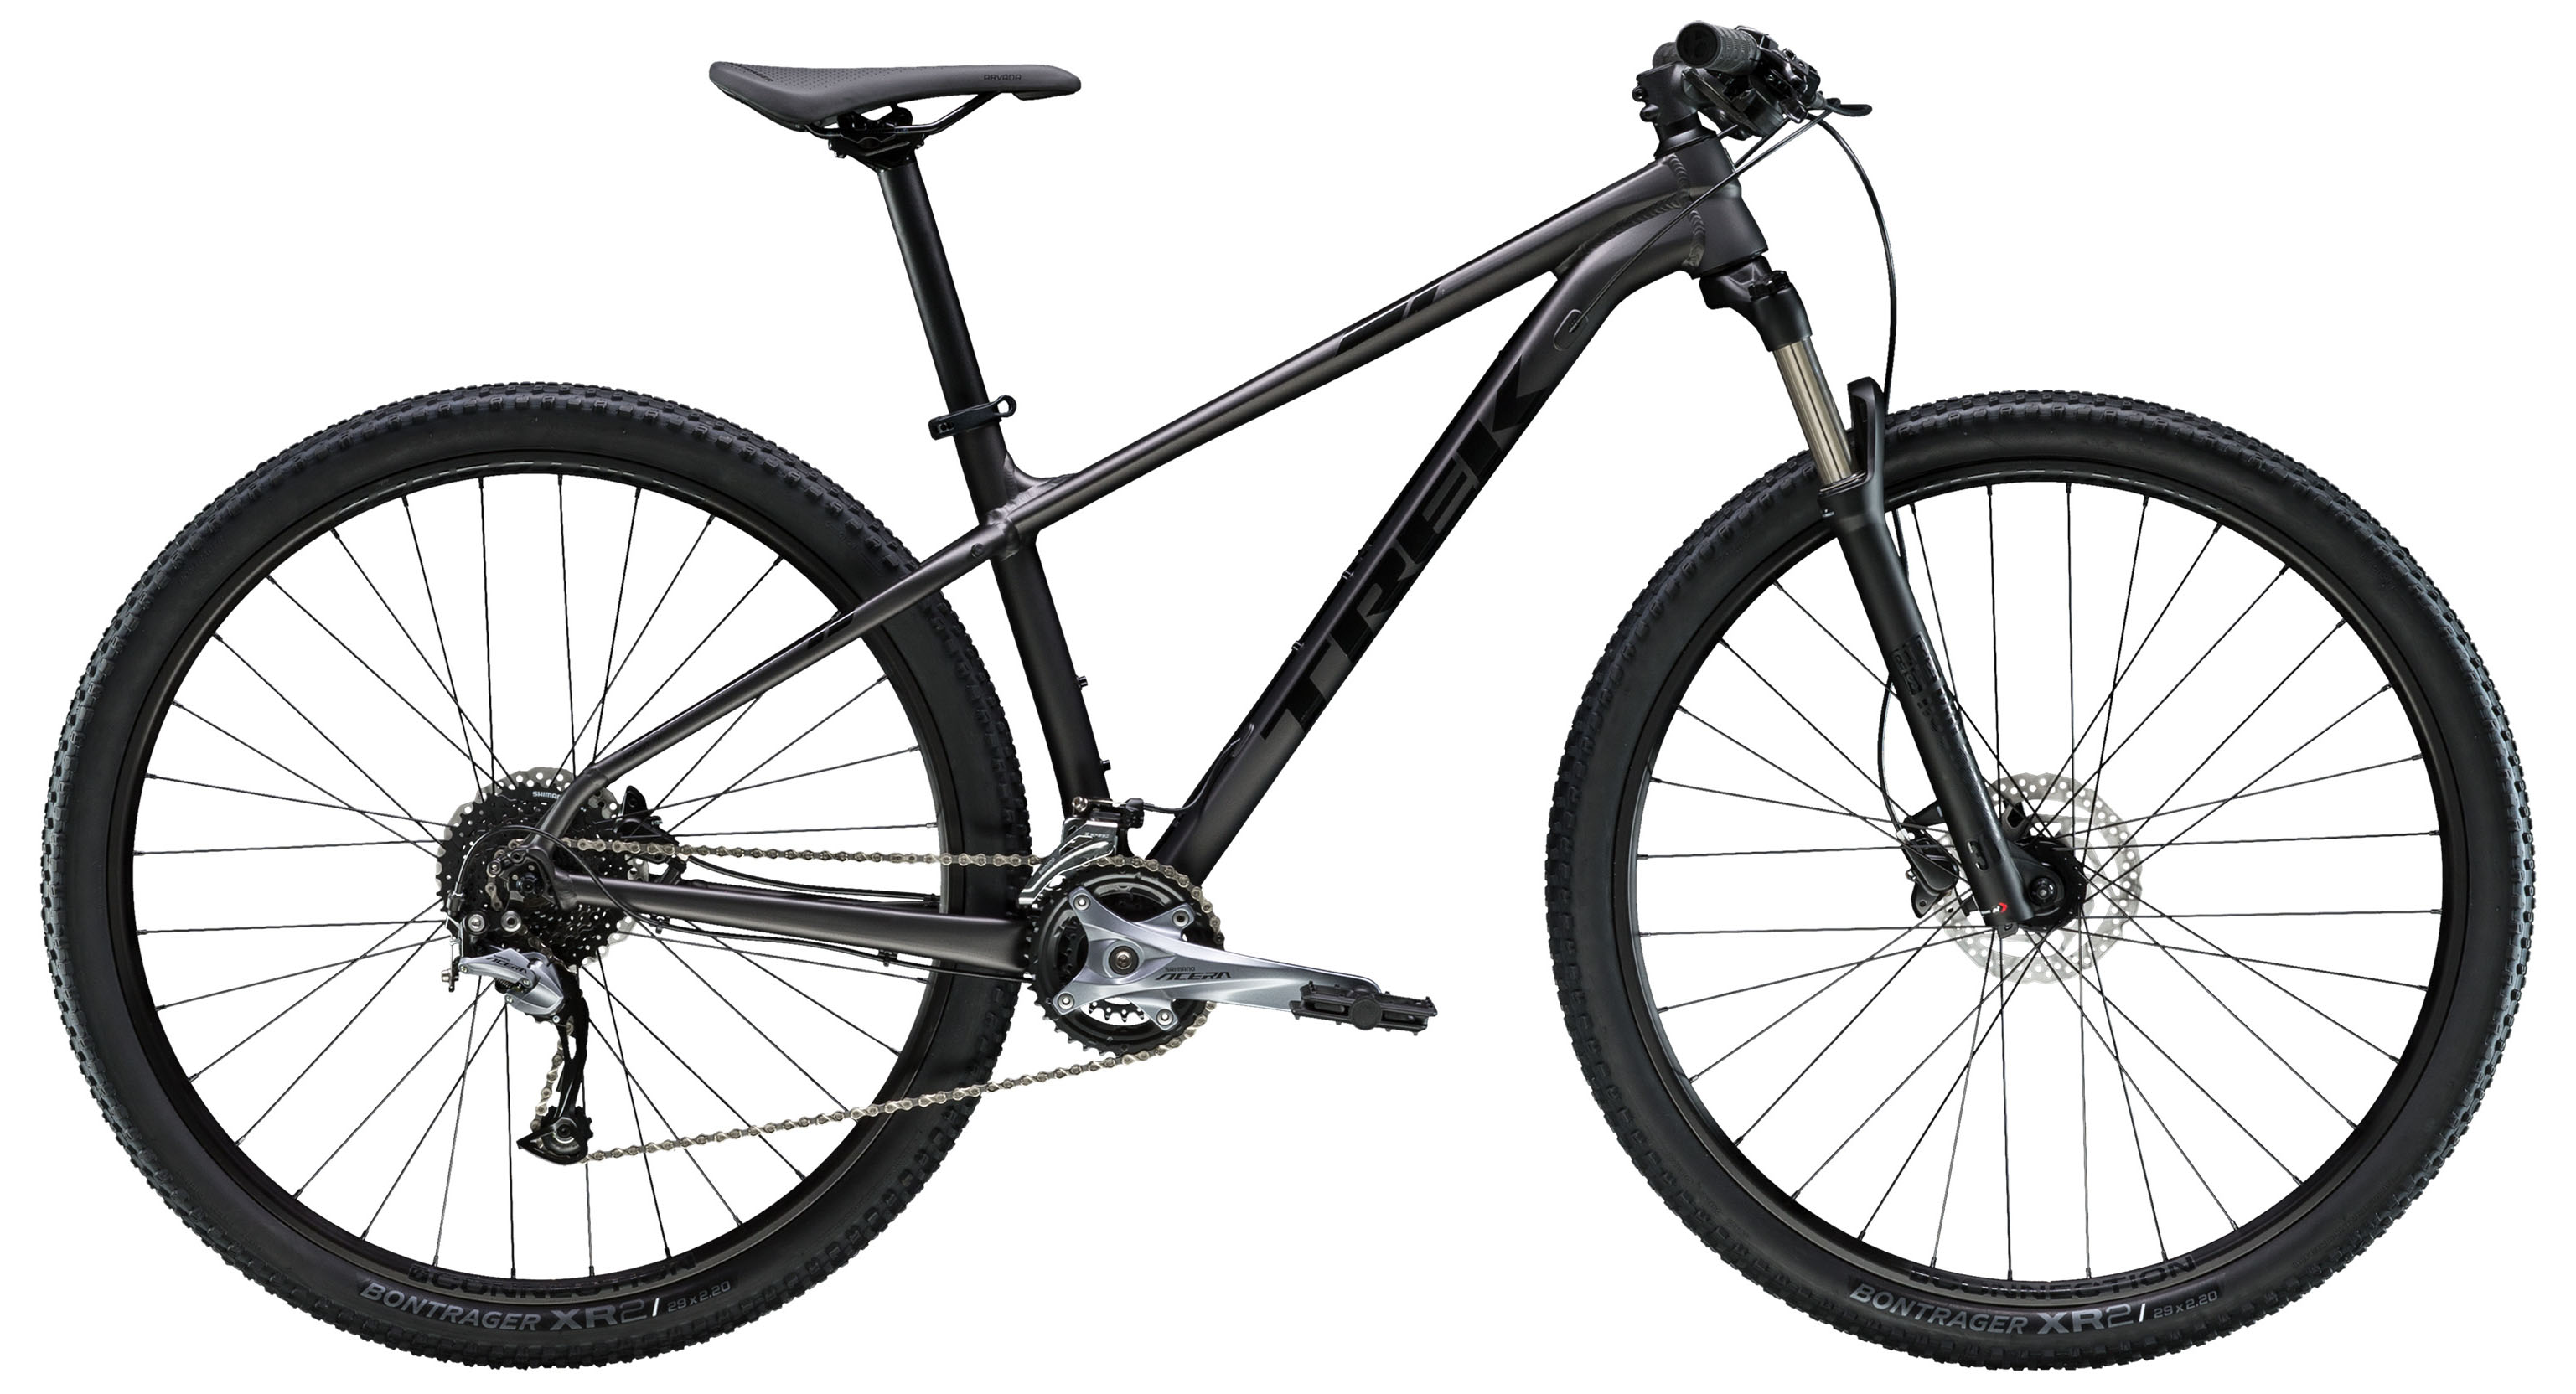  Отзывы о Горном велосипеде Trek X-Caliber 7 27,5 2019